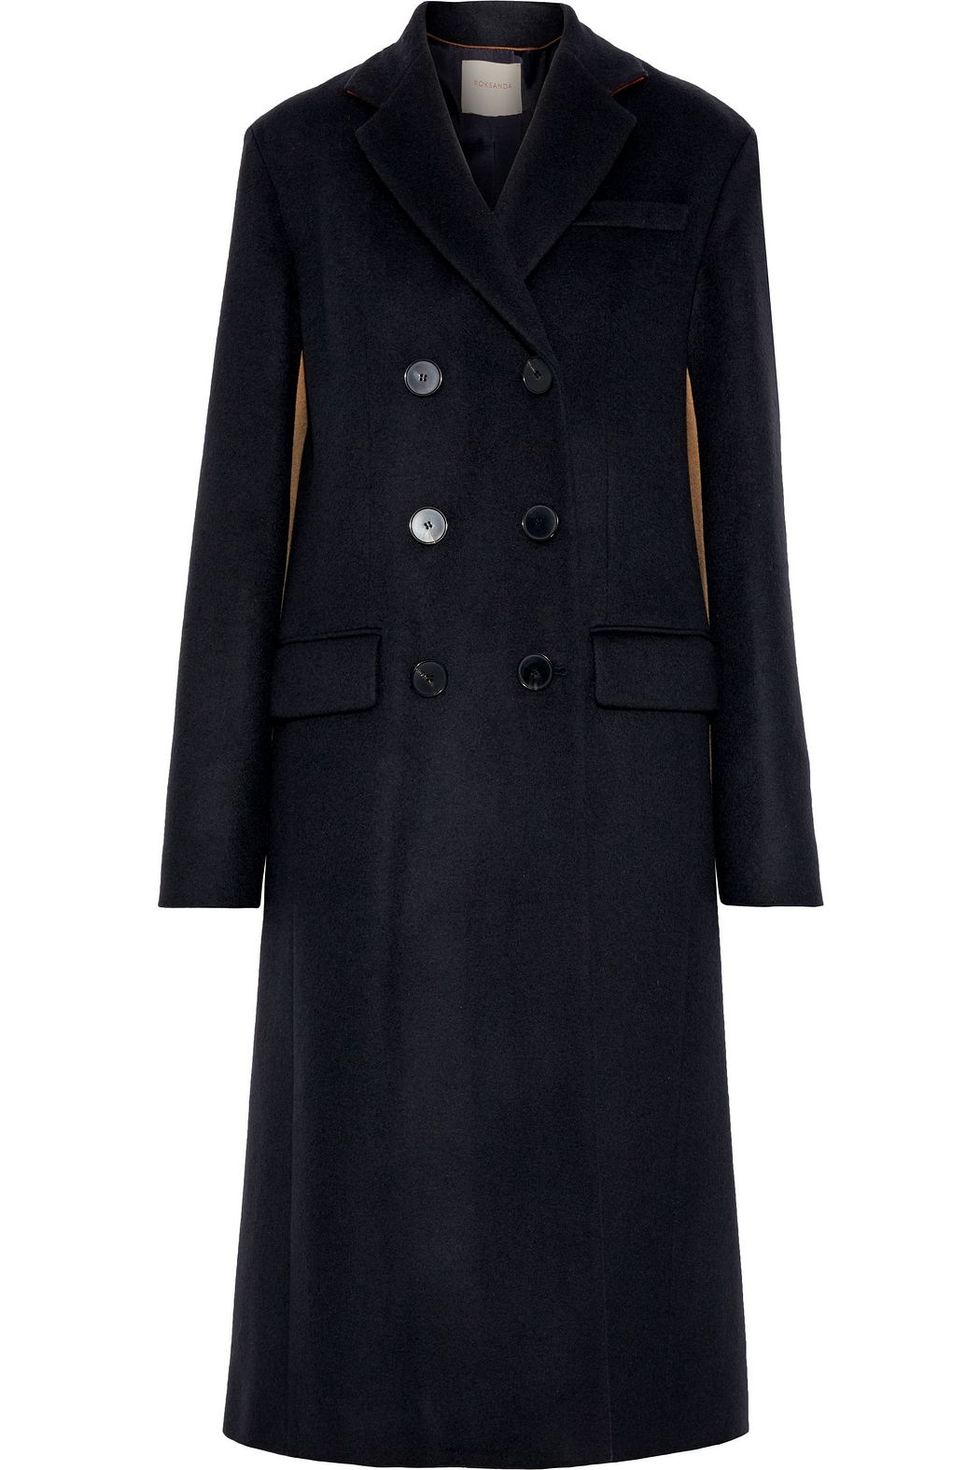 Moda Cappotti 2021: cappotto in cashmere